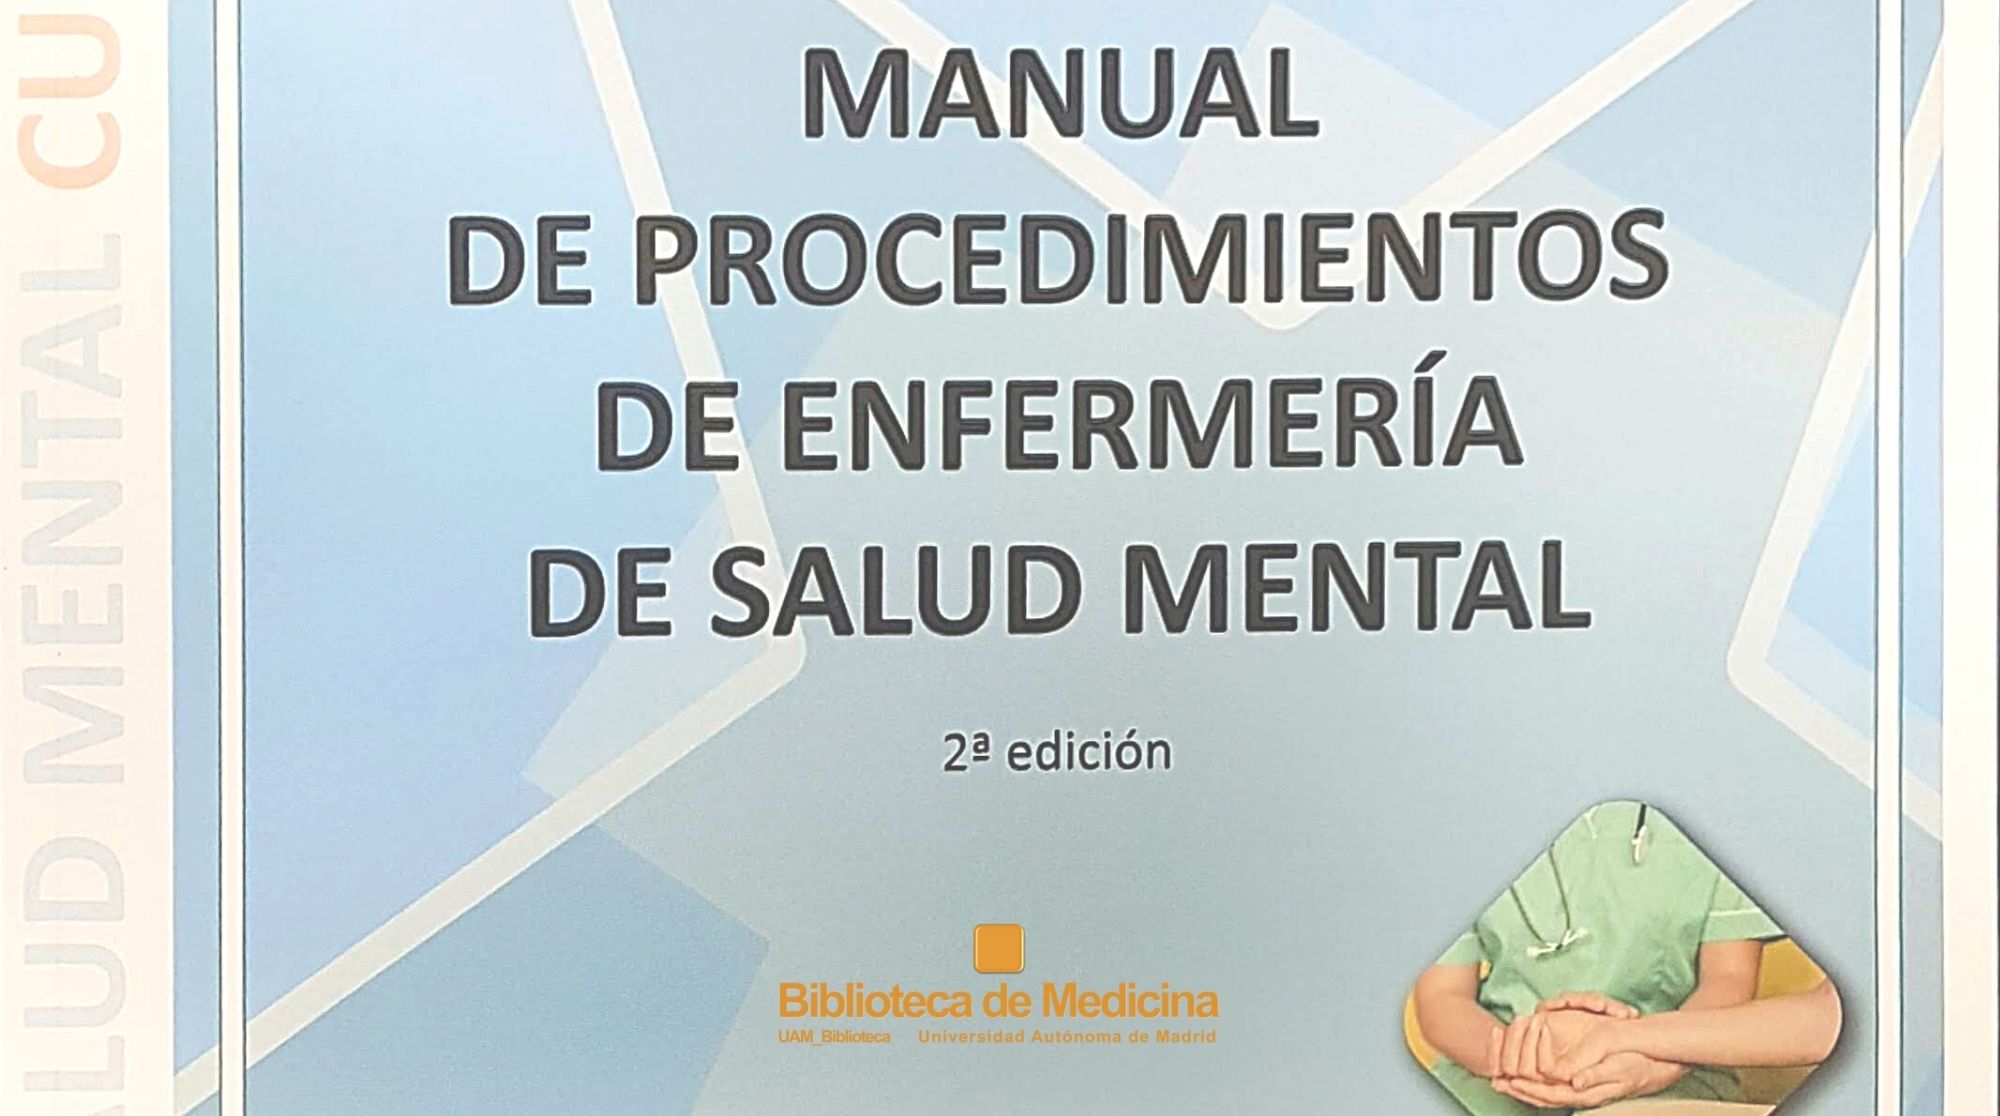 Manual de procedimientos de enfermería y salud mental